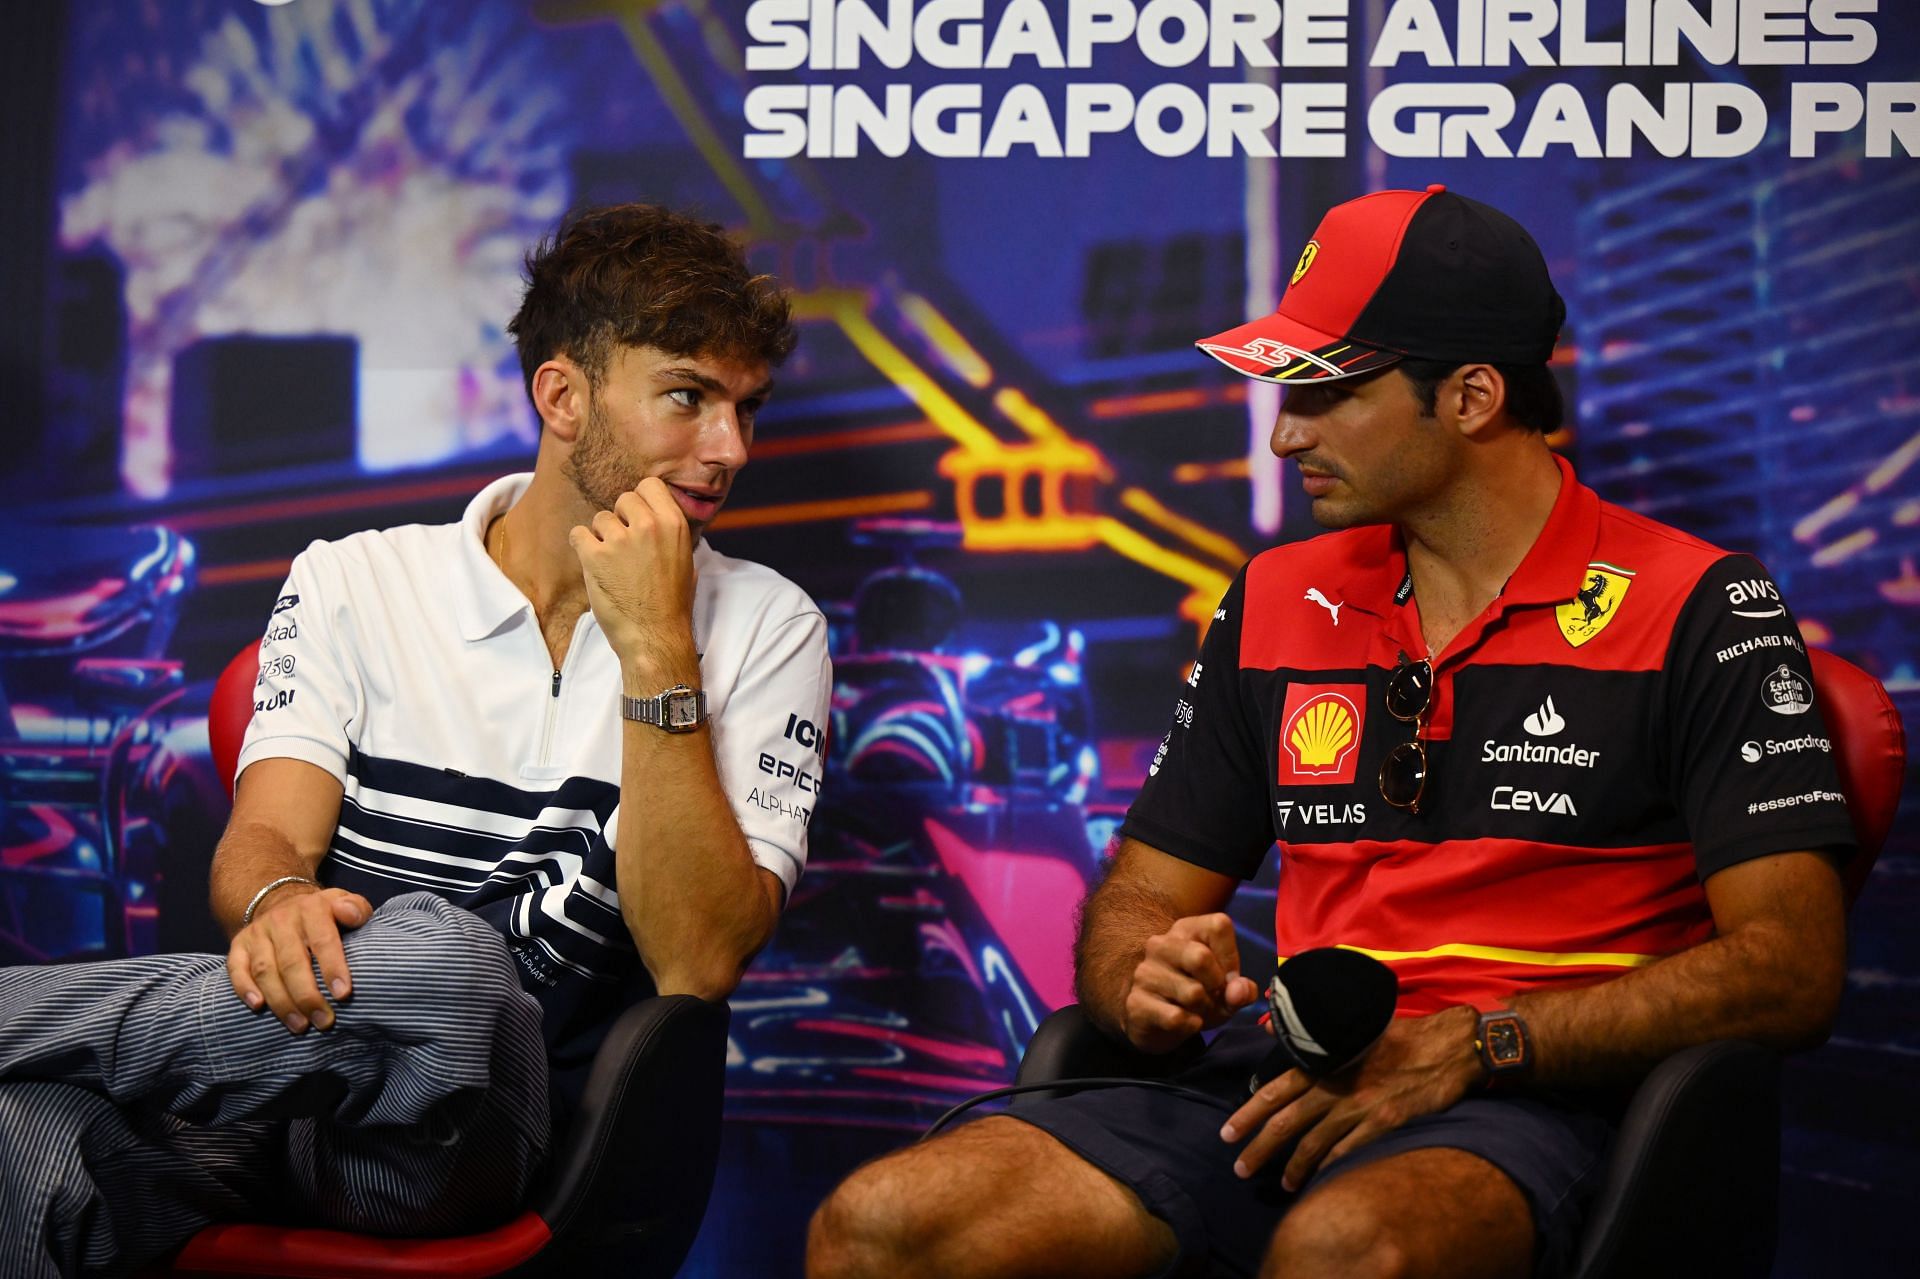 F1 Grand Prix of Singapore - Previews